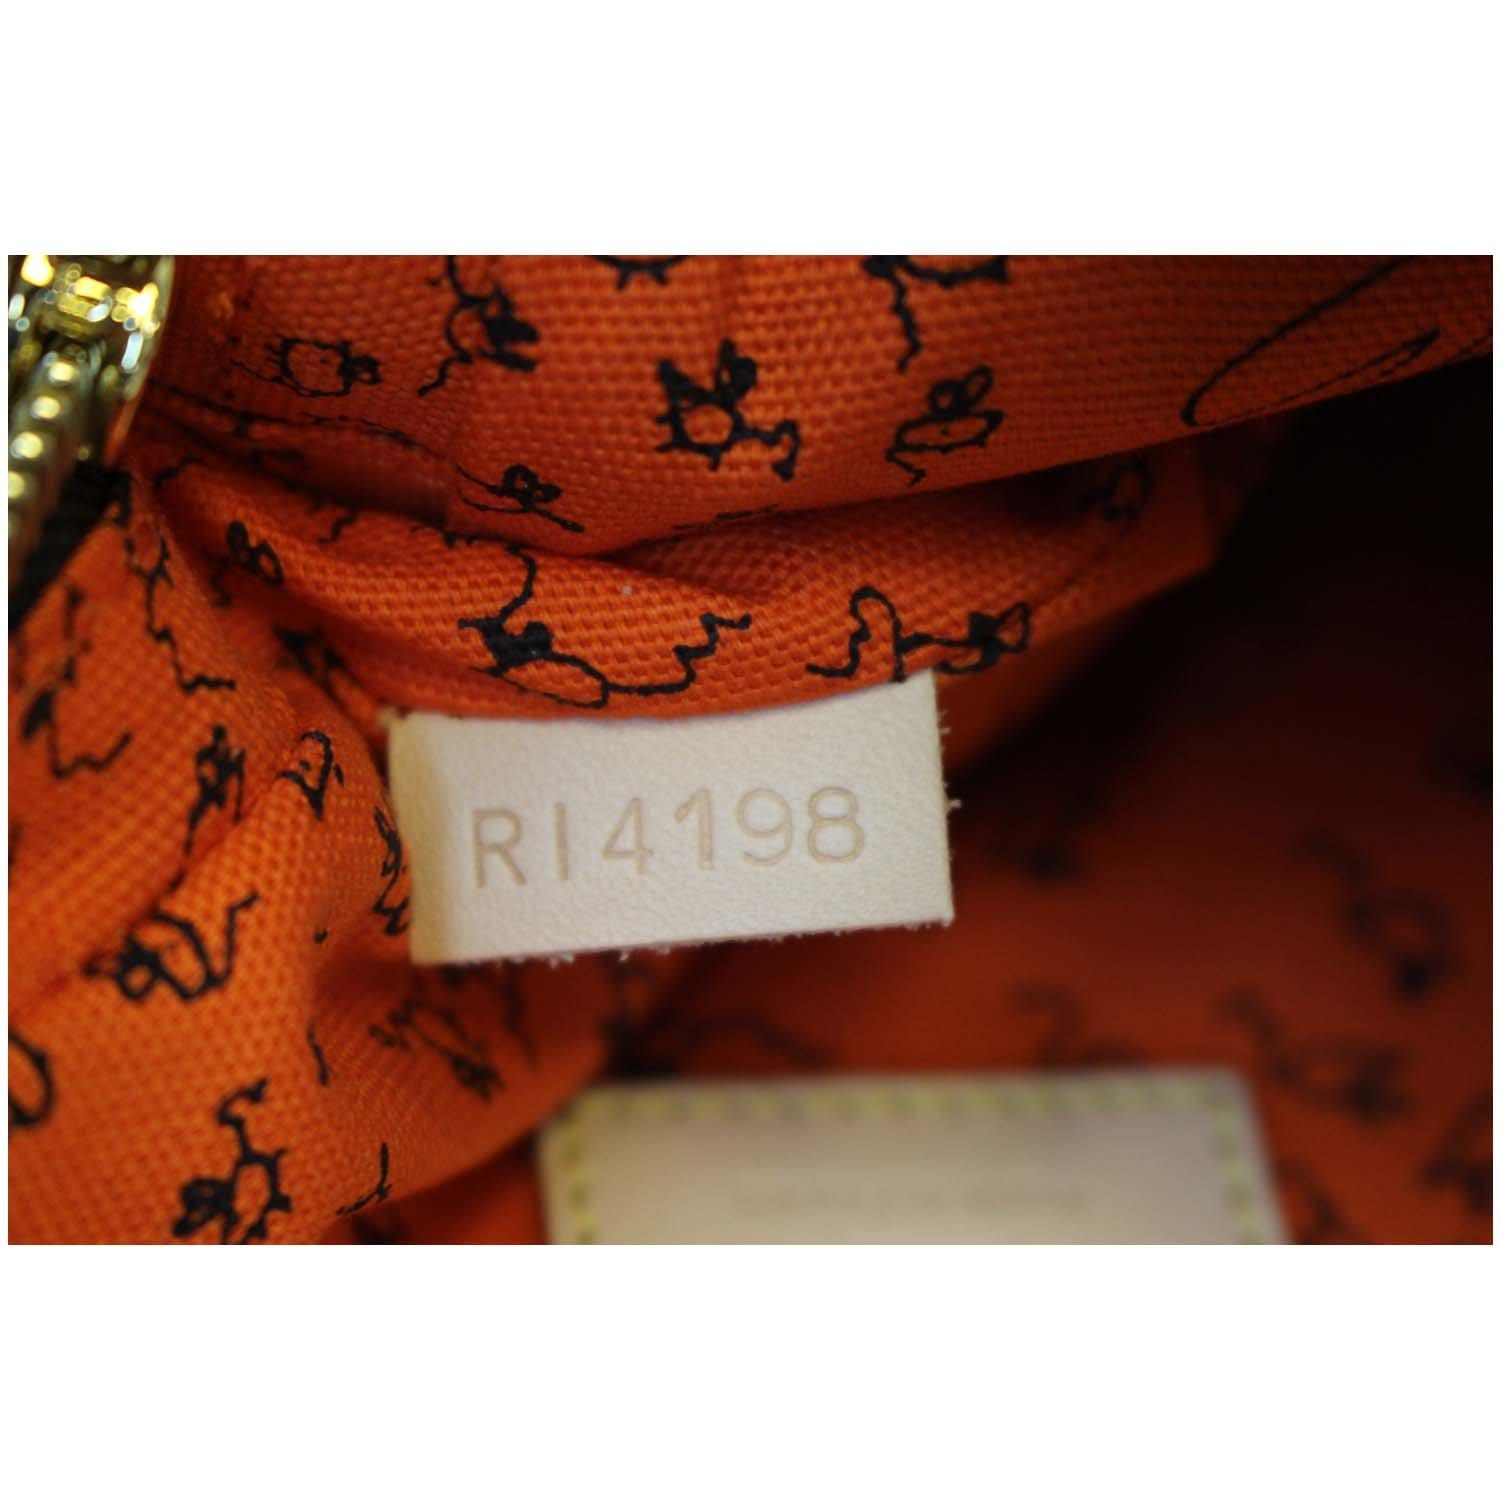 Louis Vuitton Paname Bag Set Limited Edition Grace Coddington